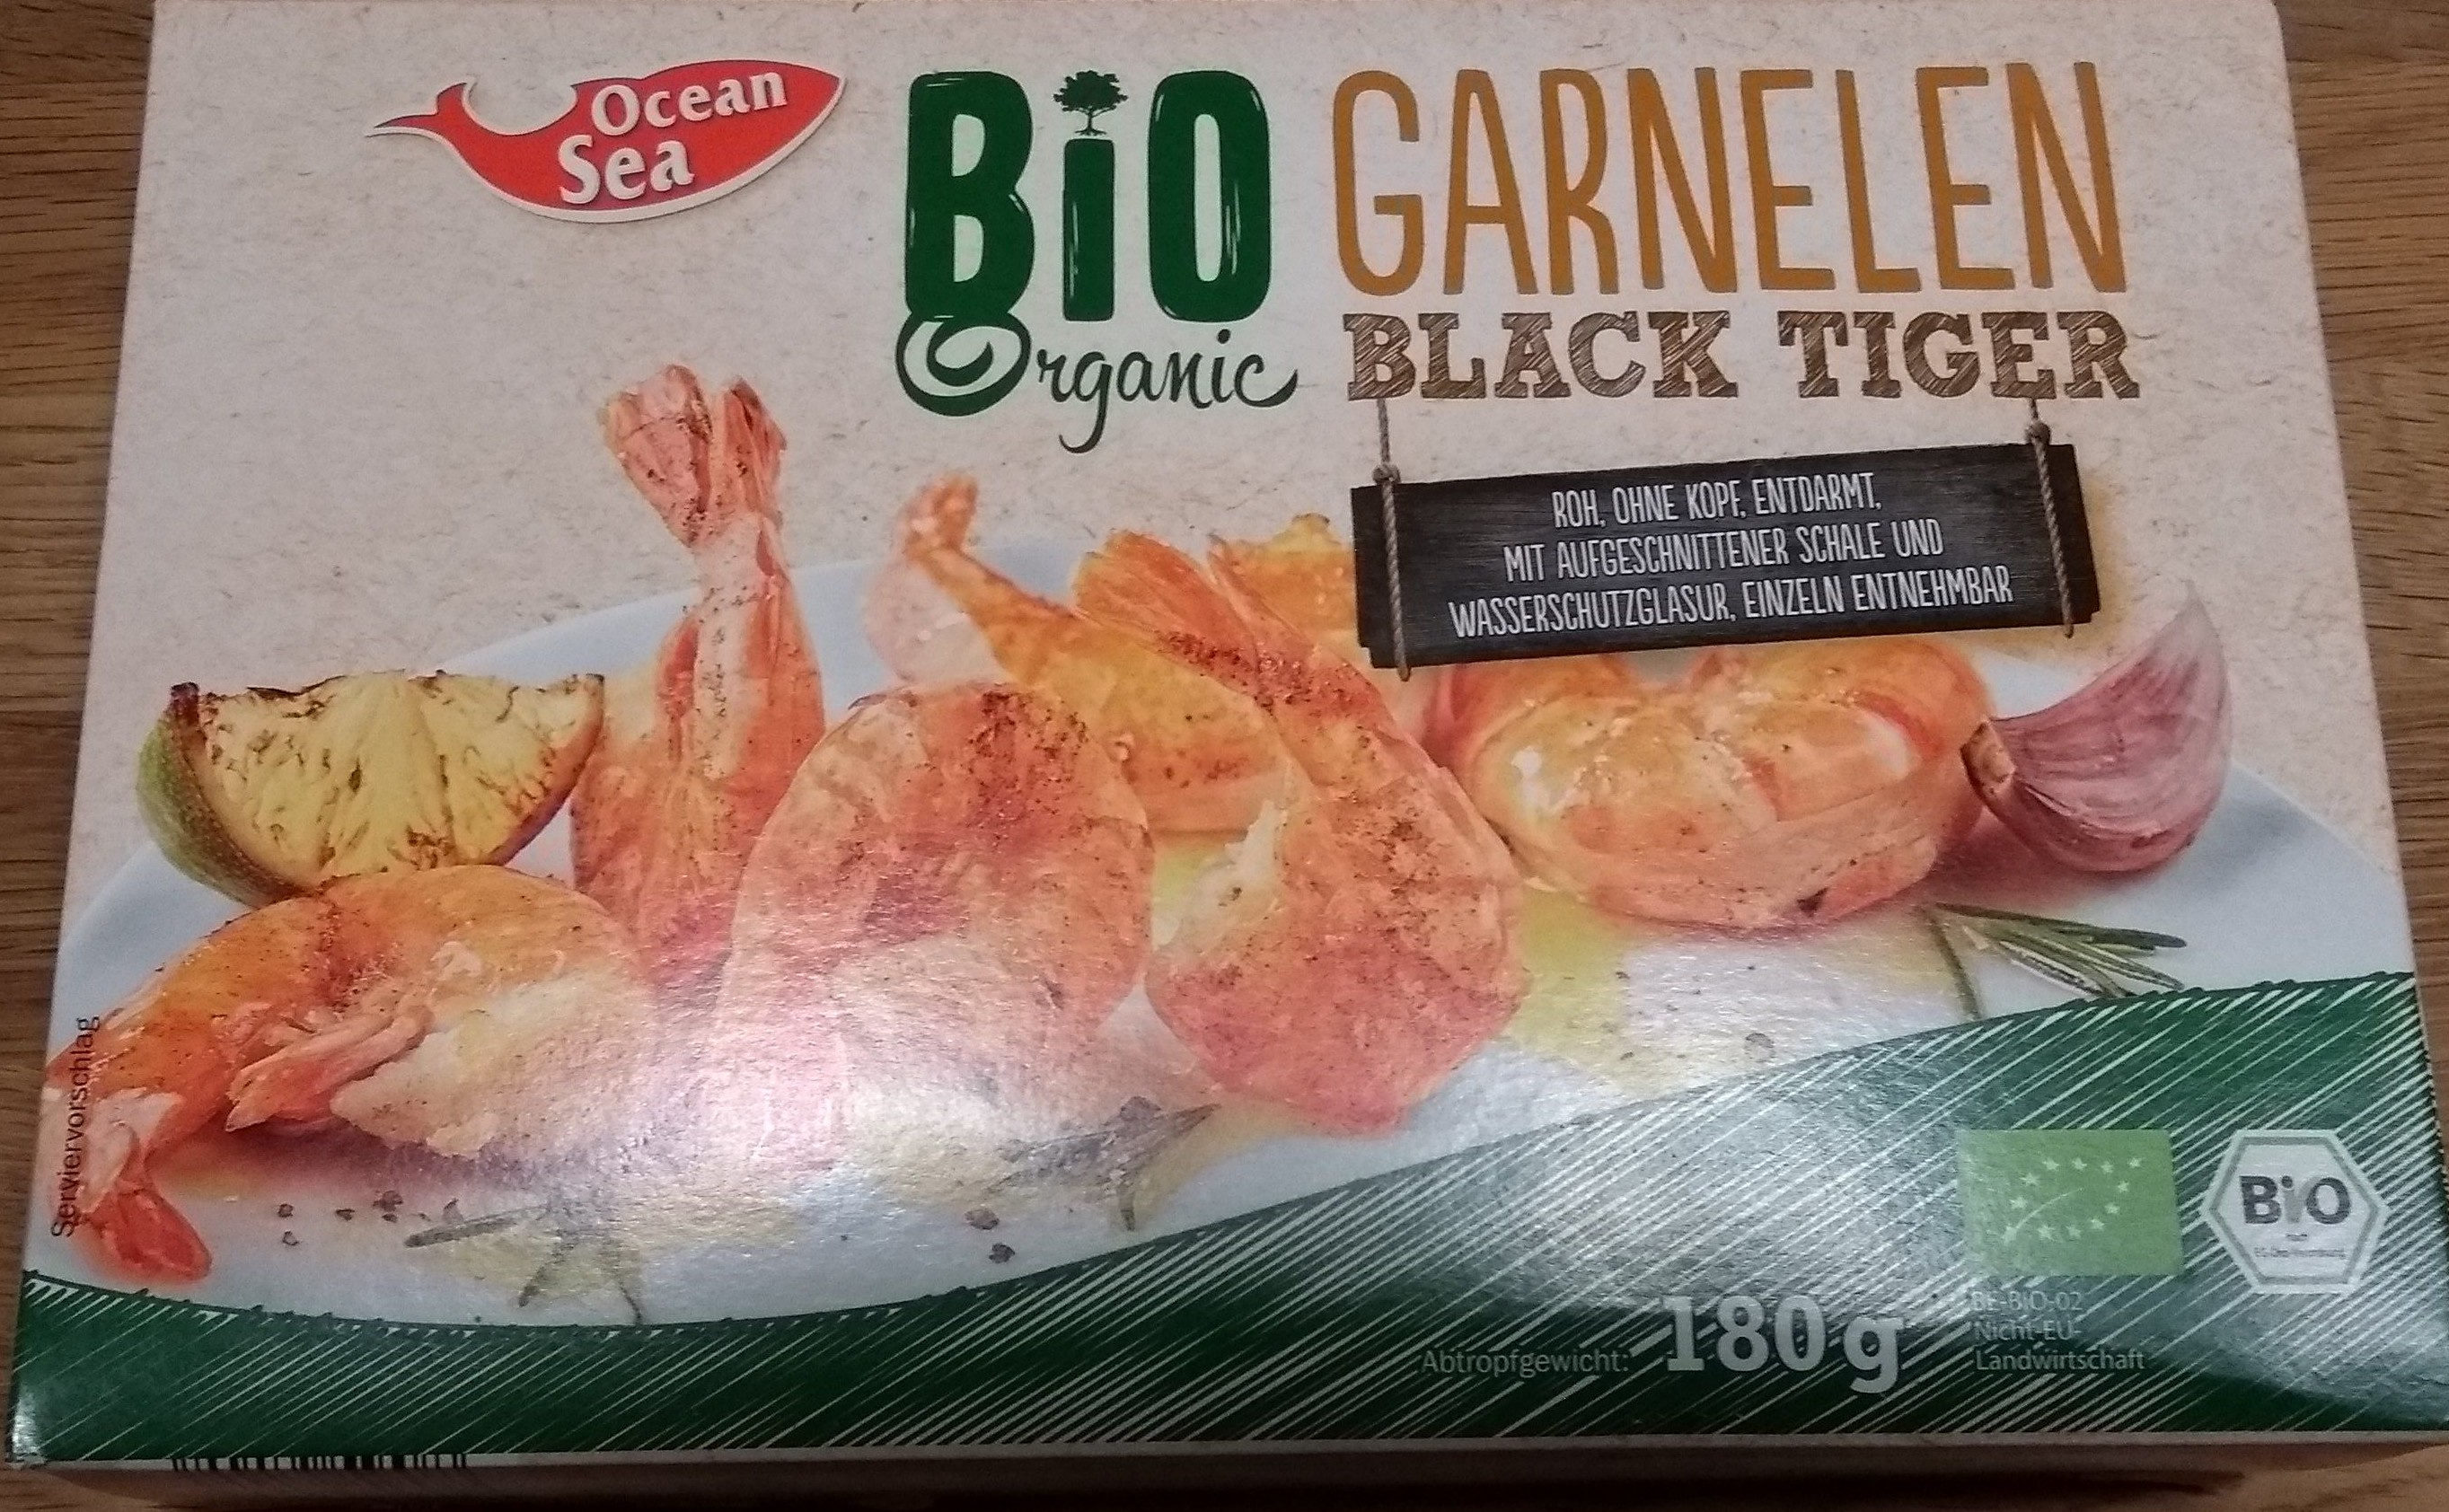 Bio Garnelen Black Tiger - Produkt